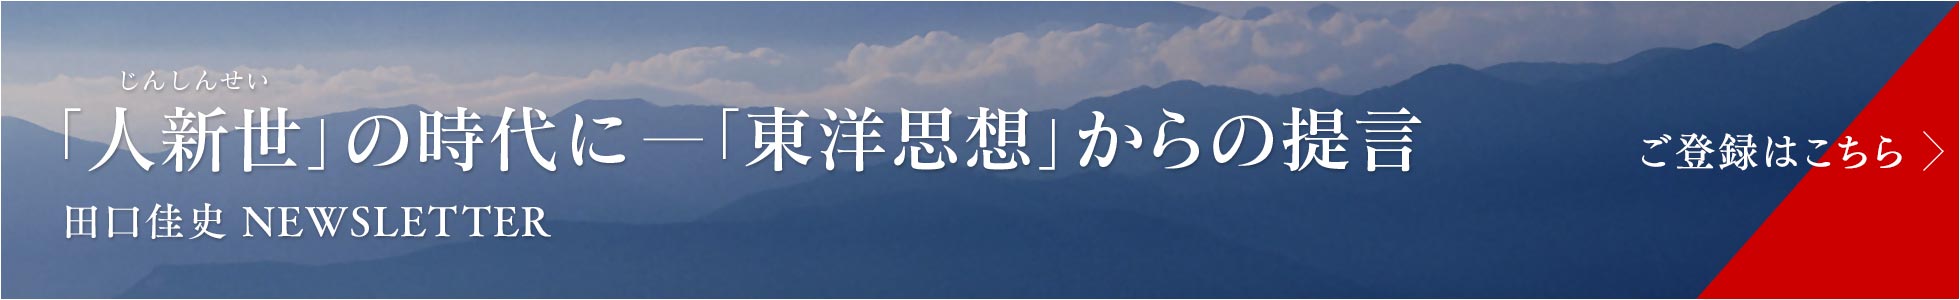 田口佳史の本 Dvd タオ クラブ 天は学び続ける者を助く 田口佳史公式サイト